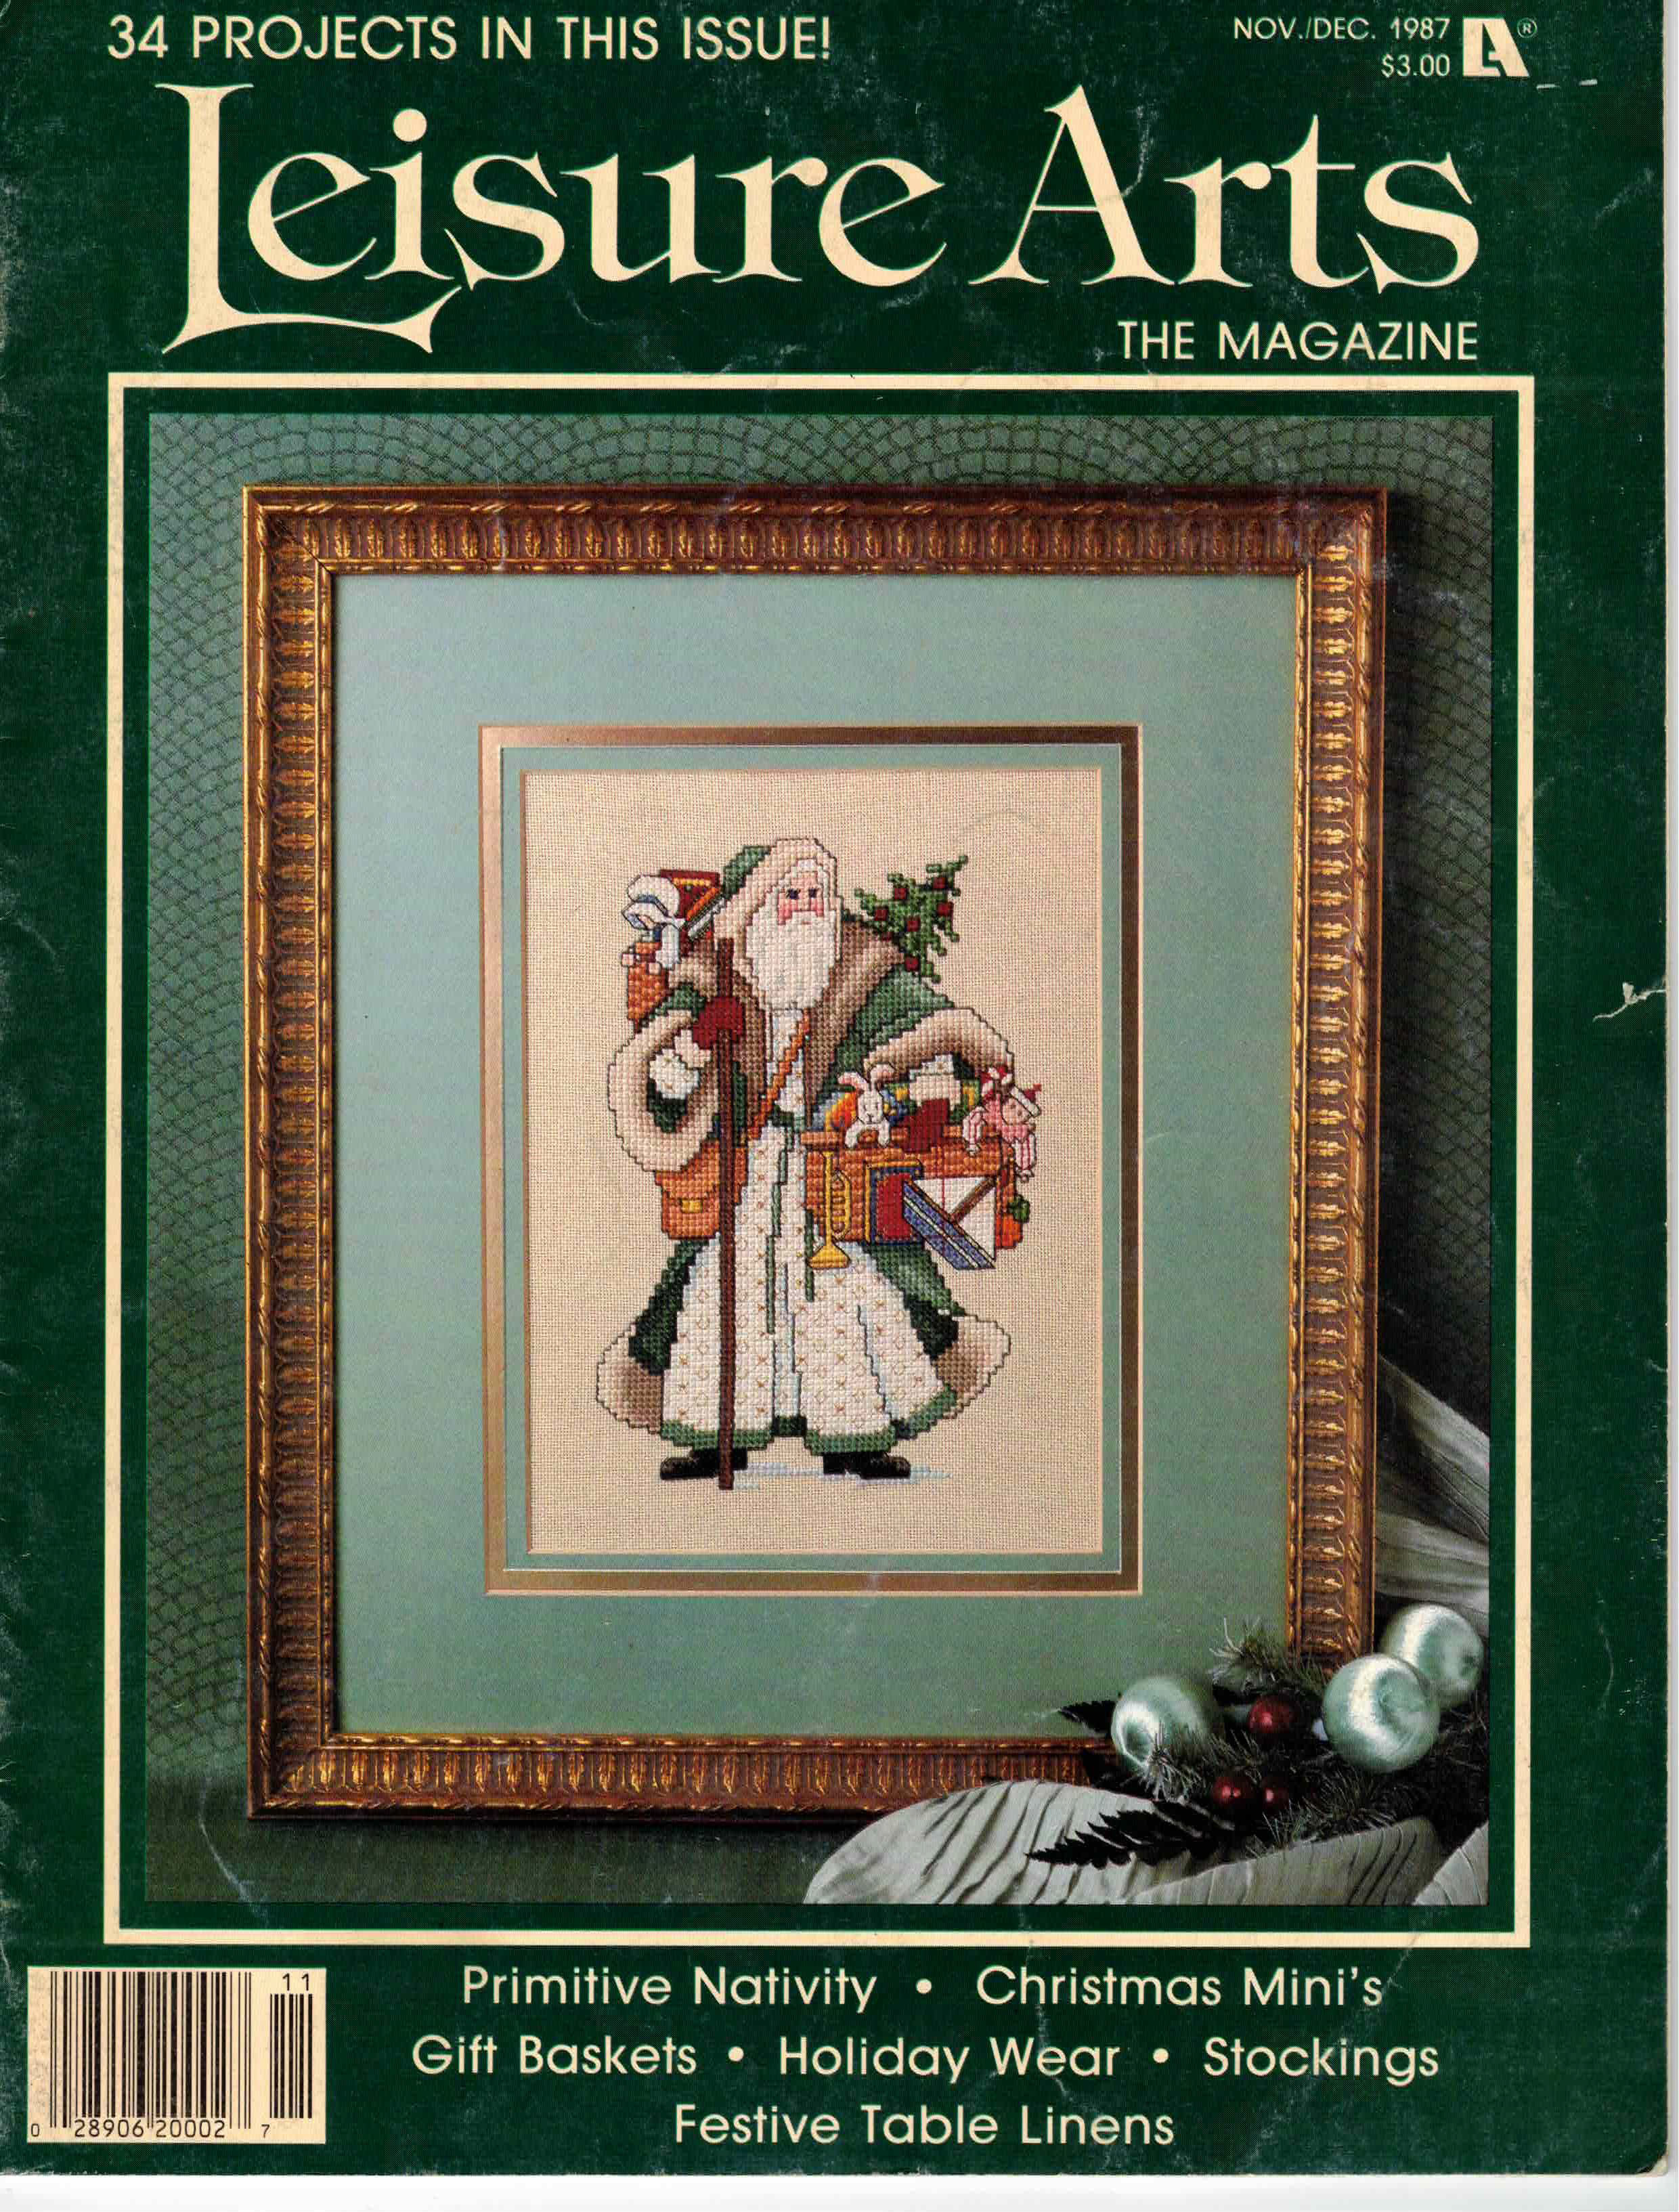 1987 Nov/Dec Issue